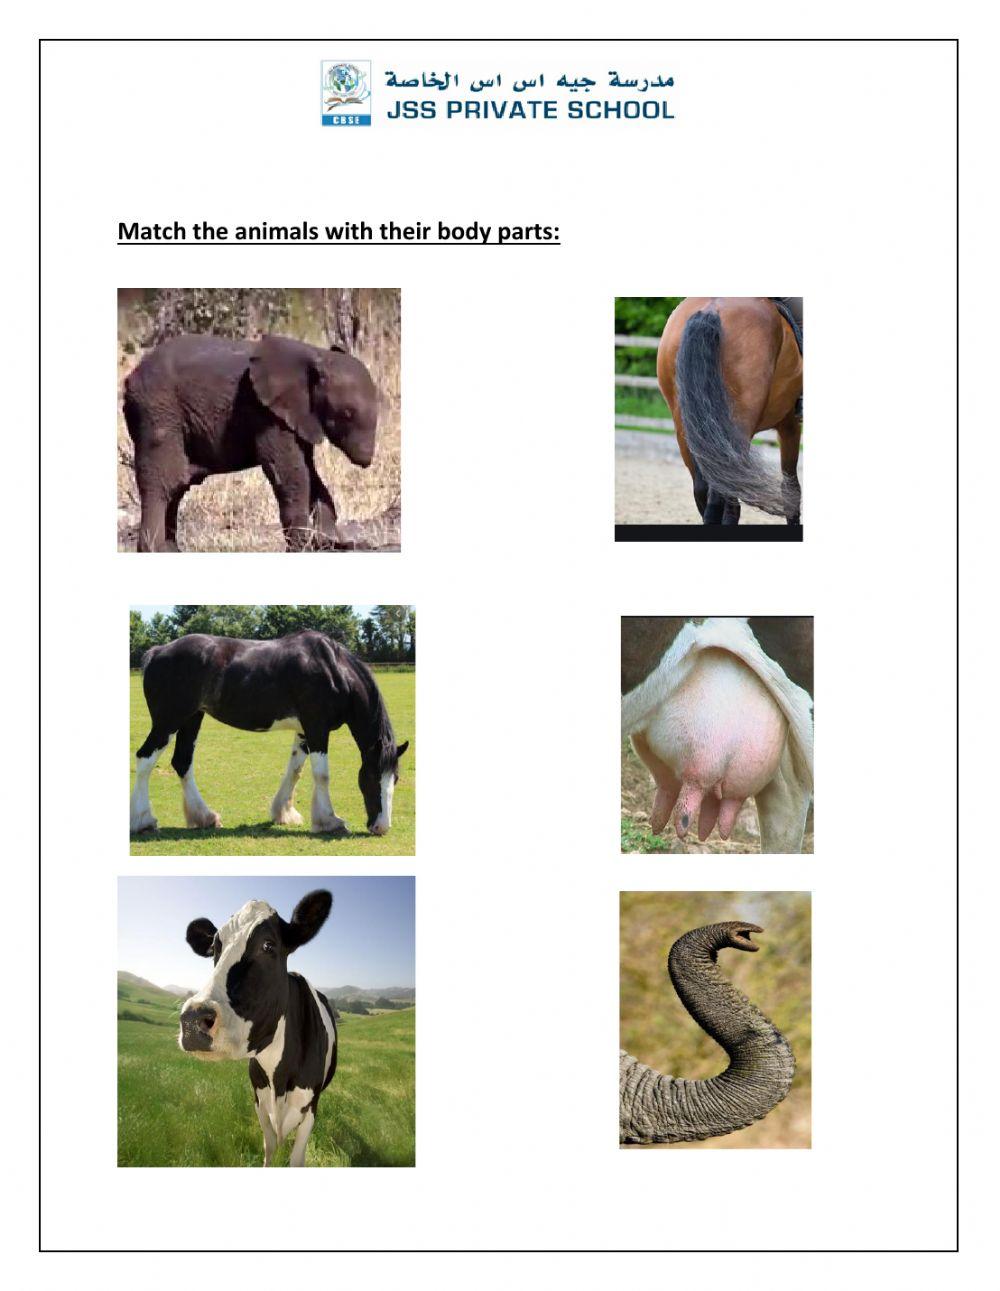 Animal worksheet